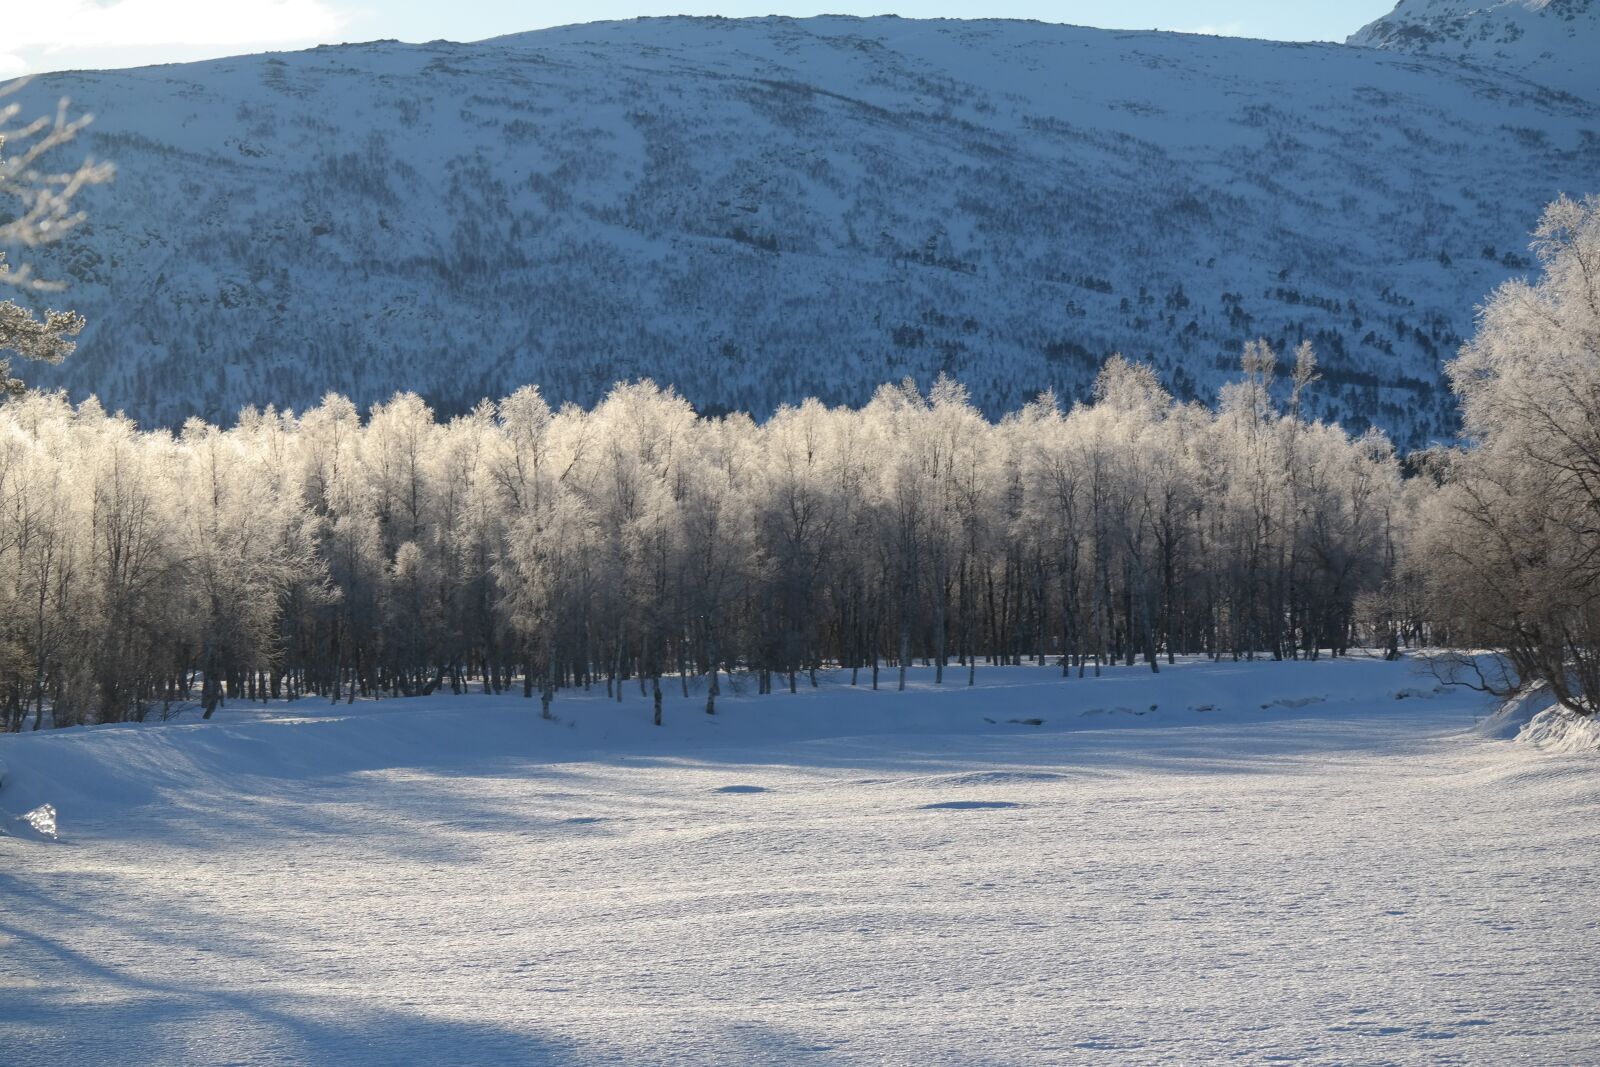 Samsung NX300 sample photo. Sun, winter, mountain photography